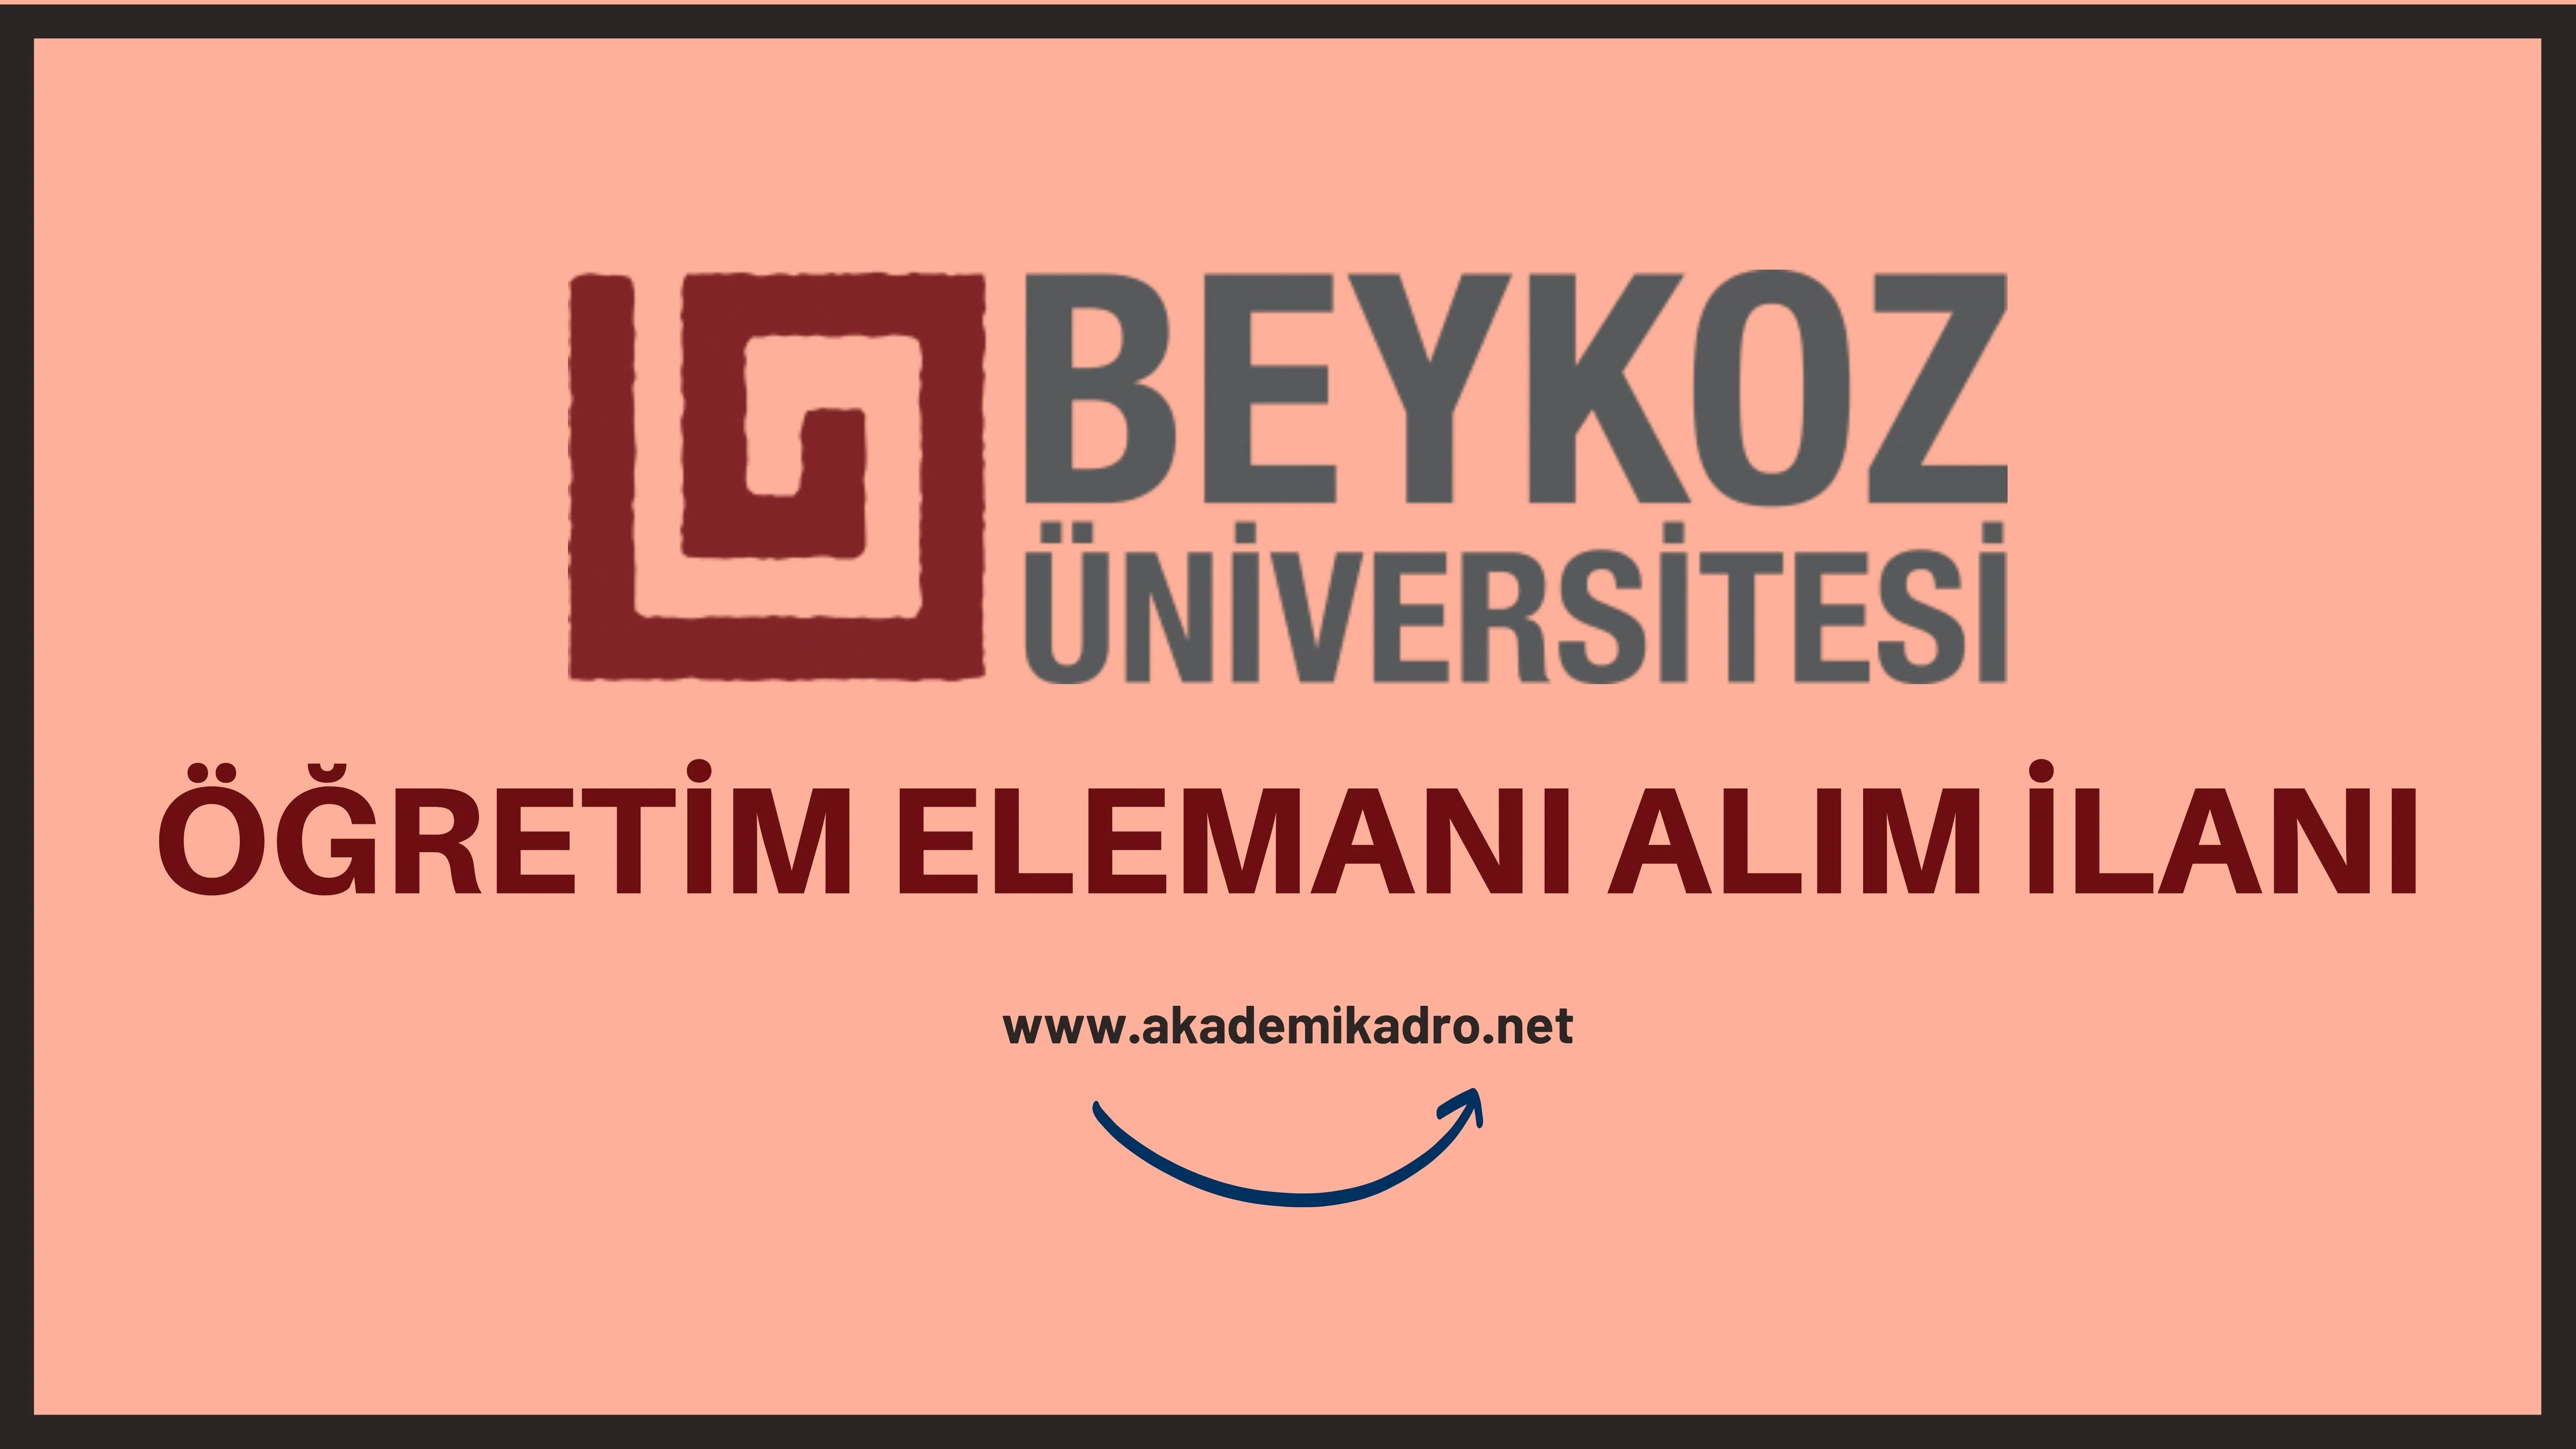 Beykoz Üniversitesi 12 Öğretim görevlisi, 6 Araştırma görevlisi ve 22 Öğretim üyesi alacak.